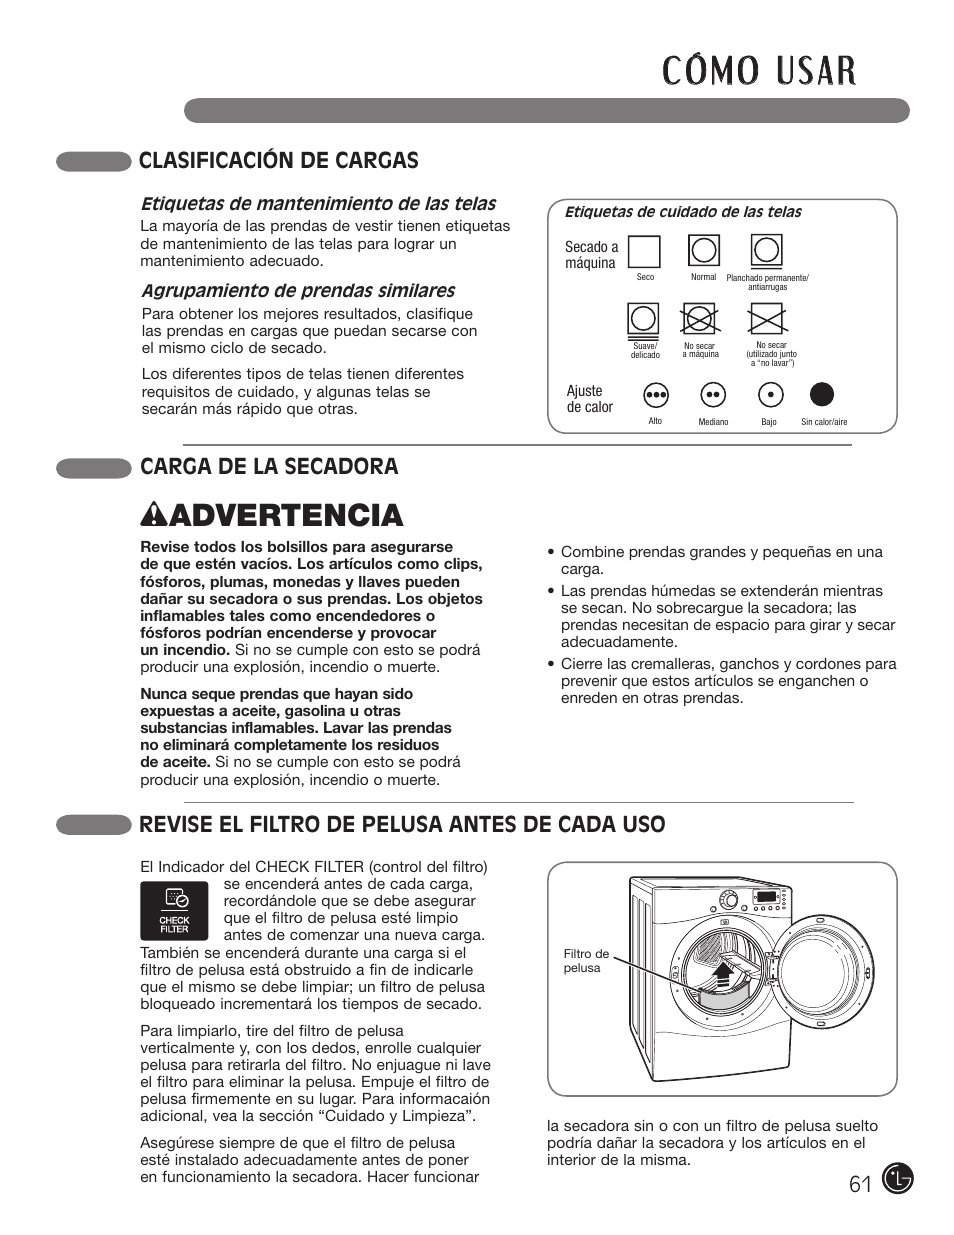 W advertencia, Carga de la secadora, Clasificación de cargas | Revise el filtro de pelusa antes de cada uso | LG D5966W User Manual | Page 61 / 80